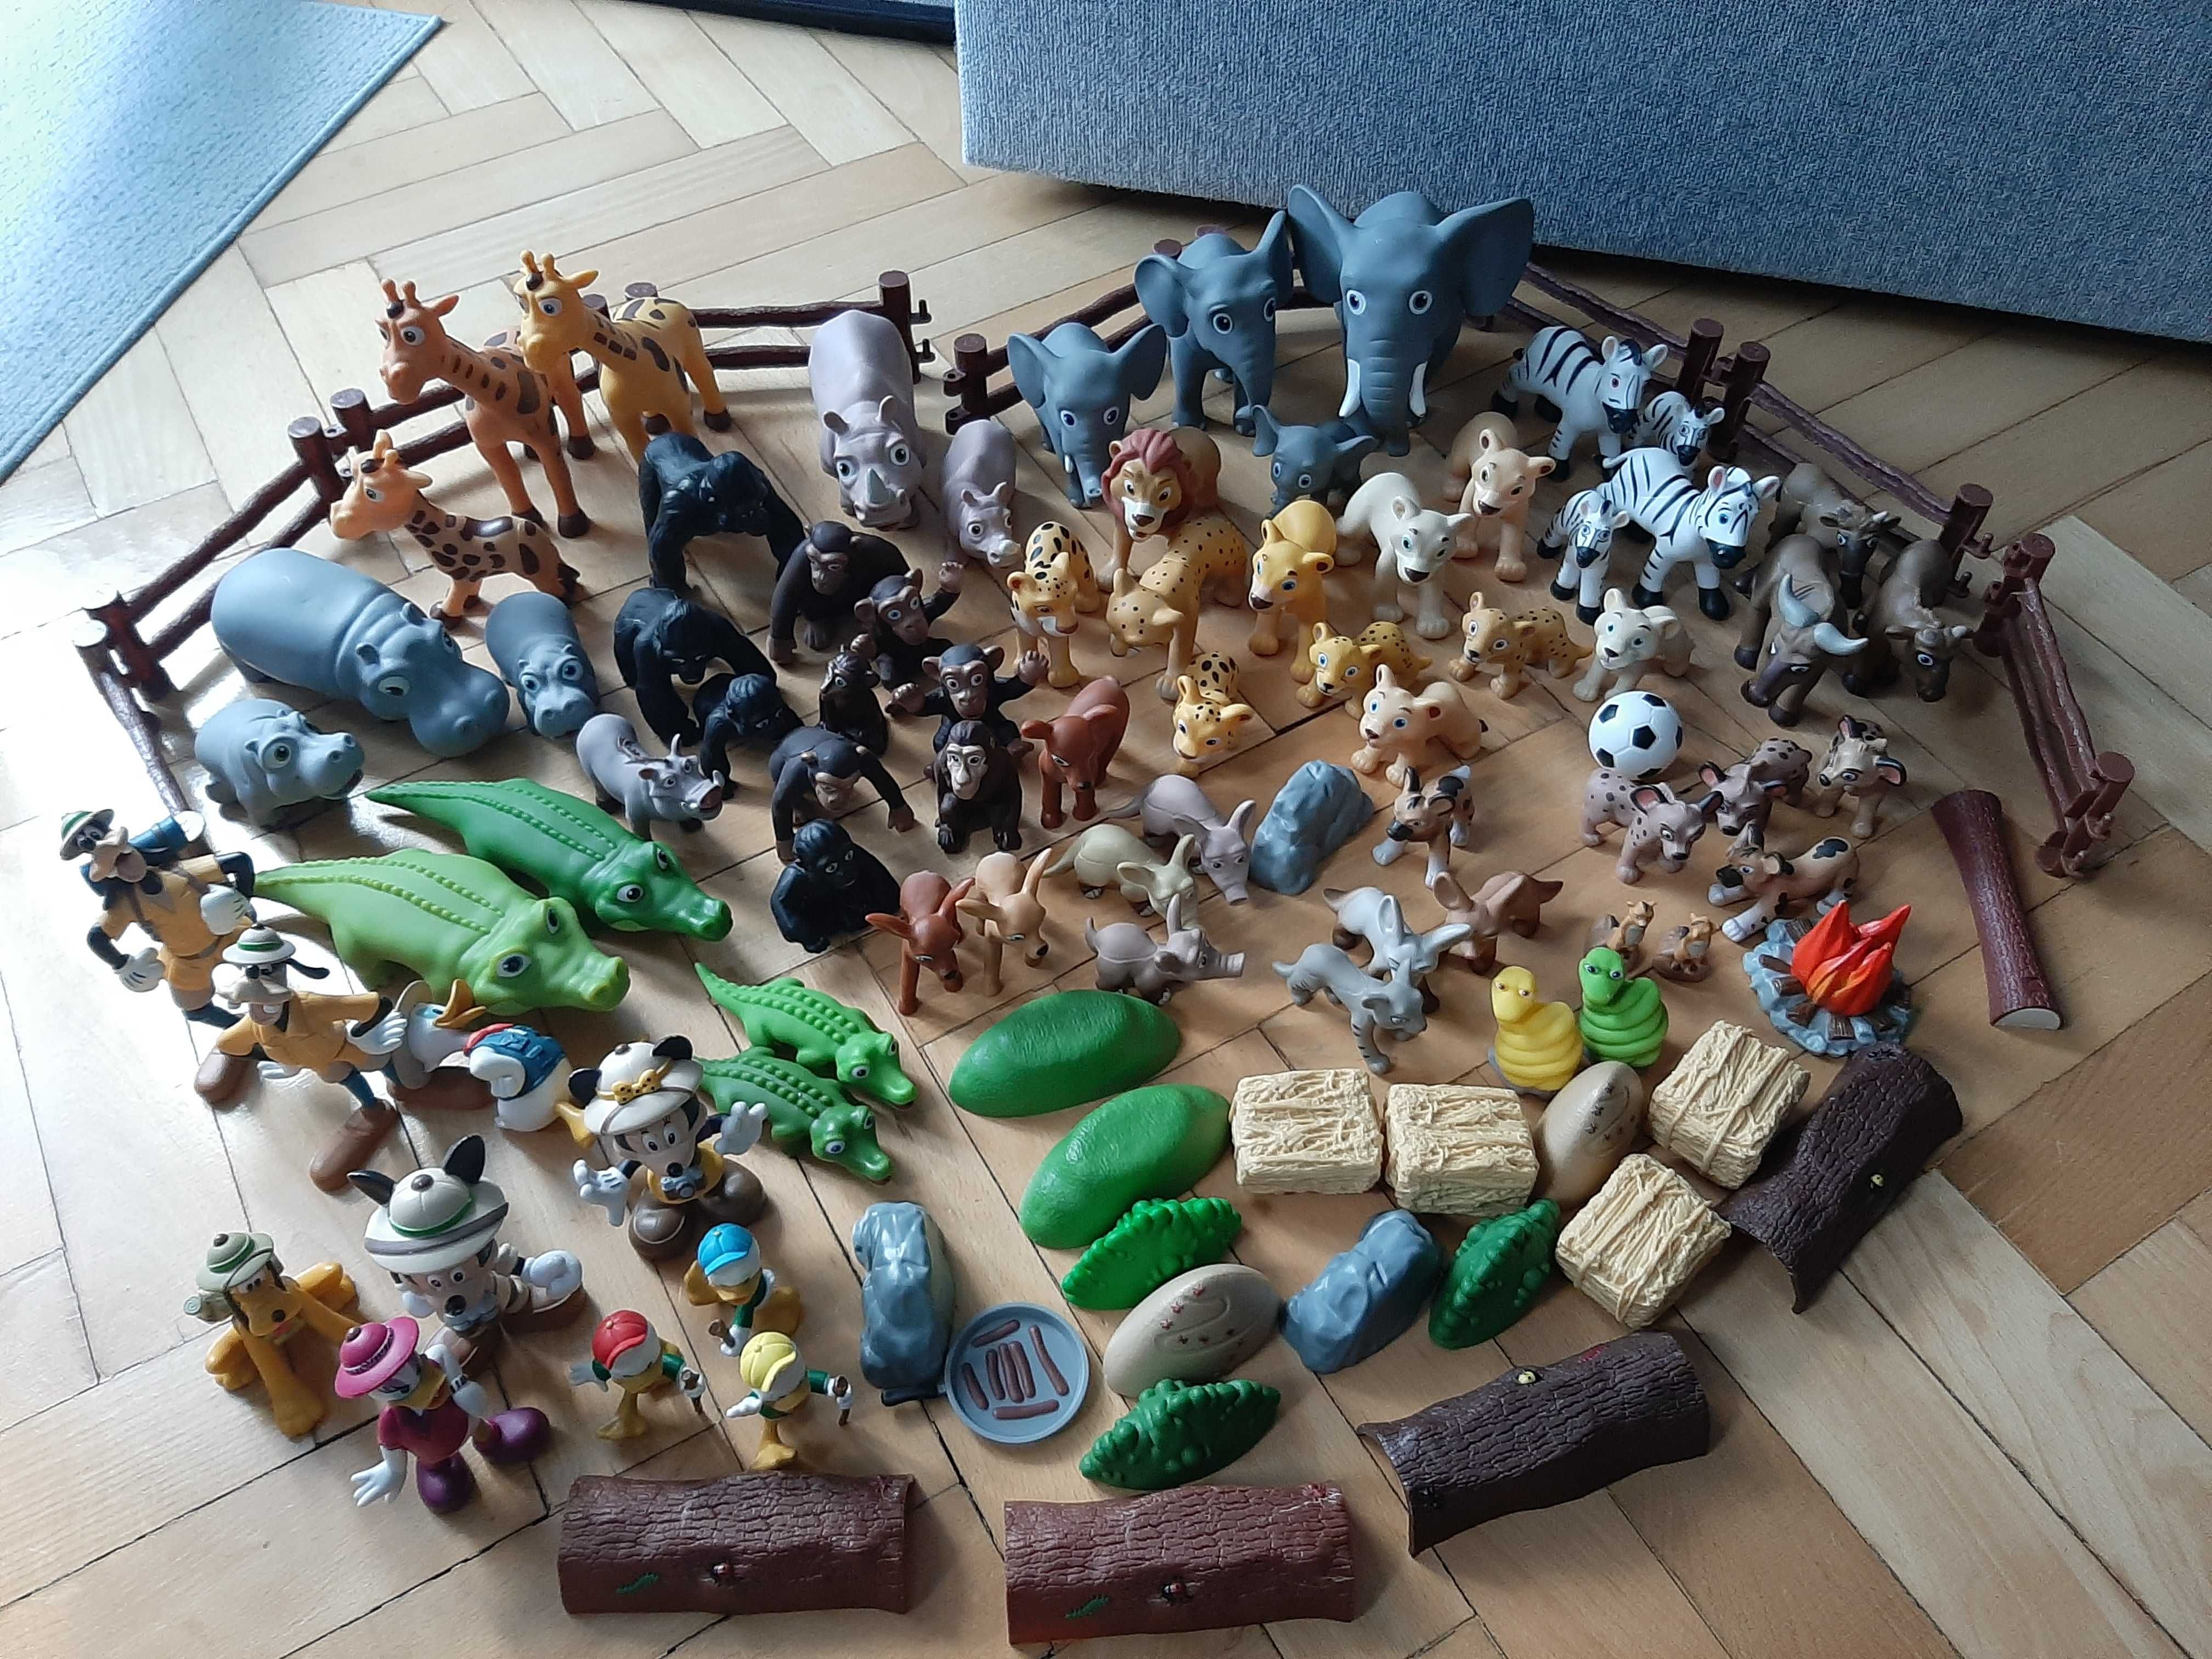 Przyjaciele na Safari Disney Książki + figurki